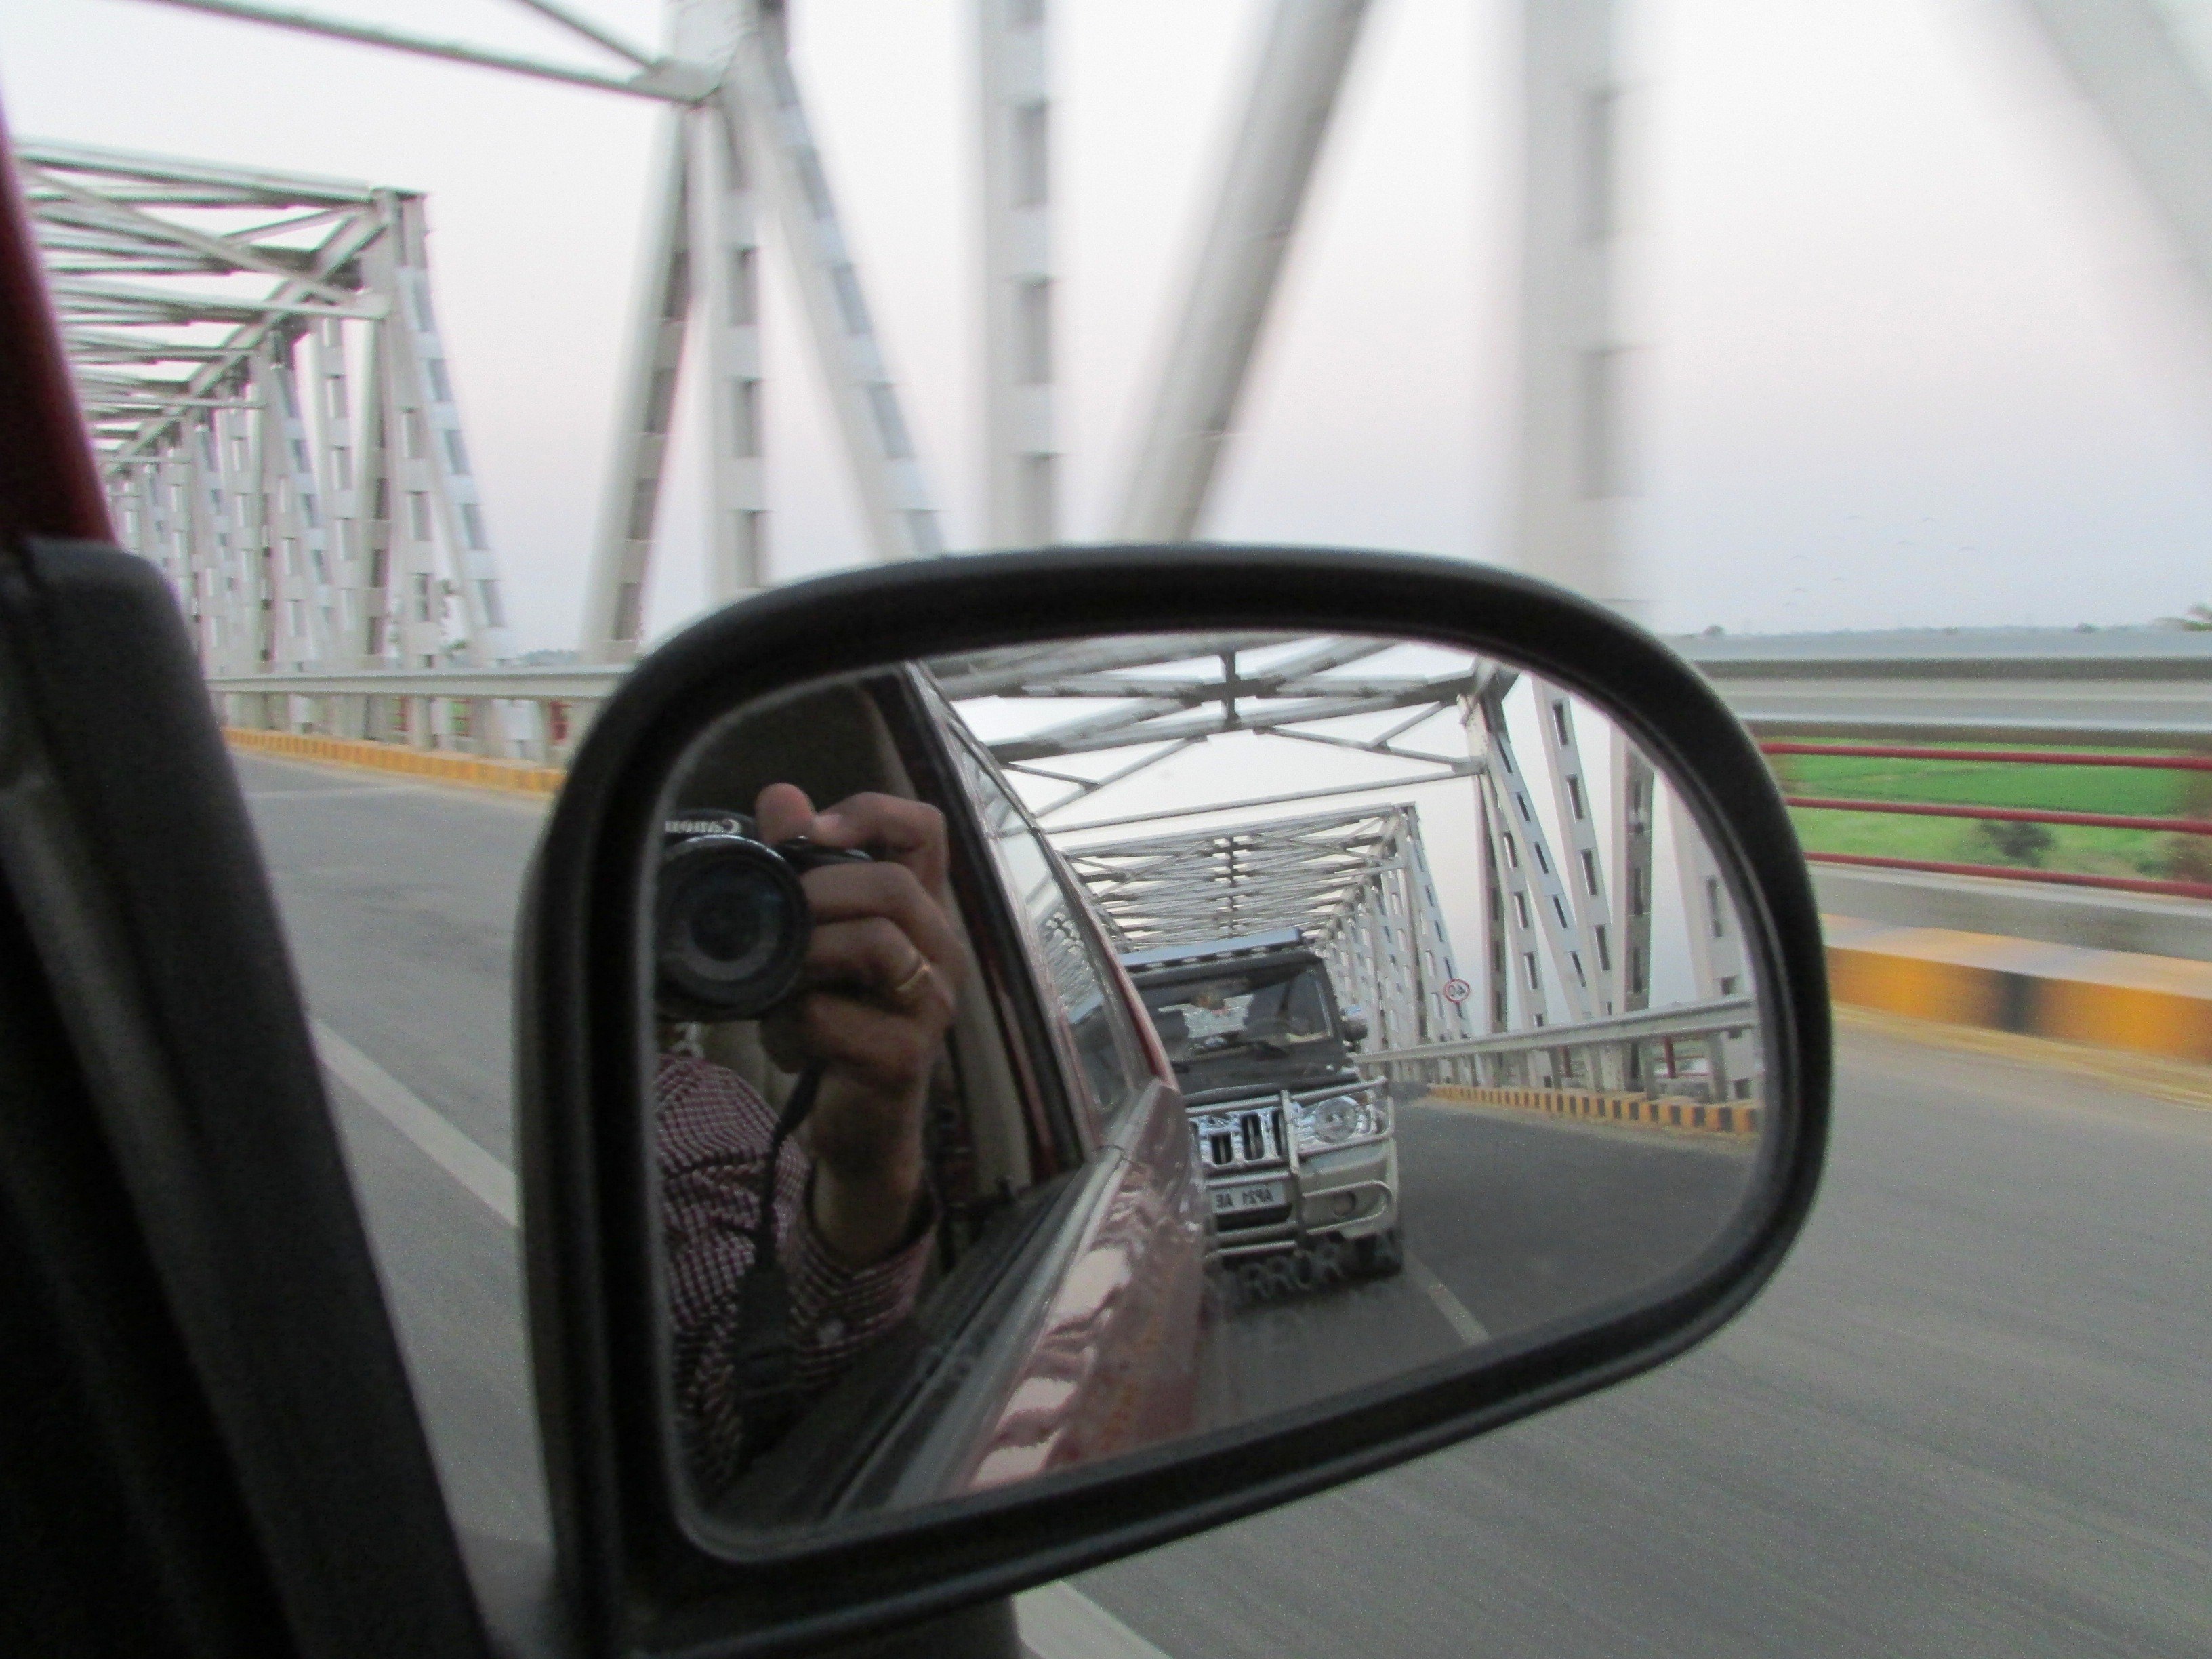 With mirror view. Отражение в зеркале машины. Зеркало автомобиля. Отражение в боковом зеркале авто.